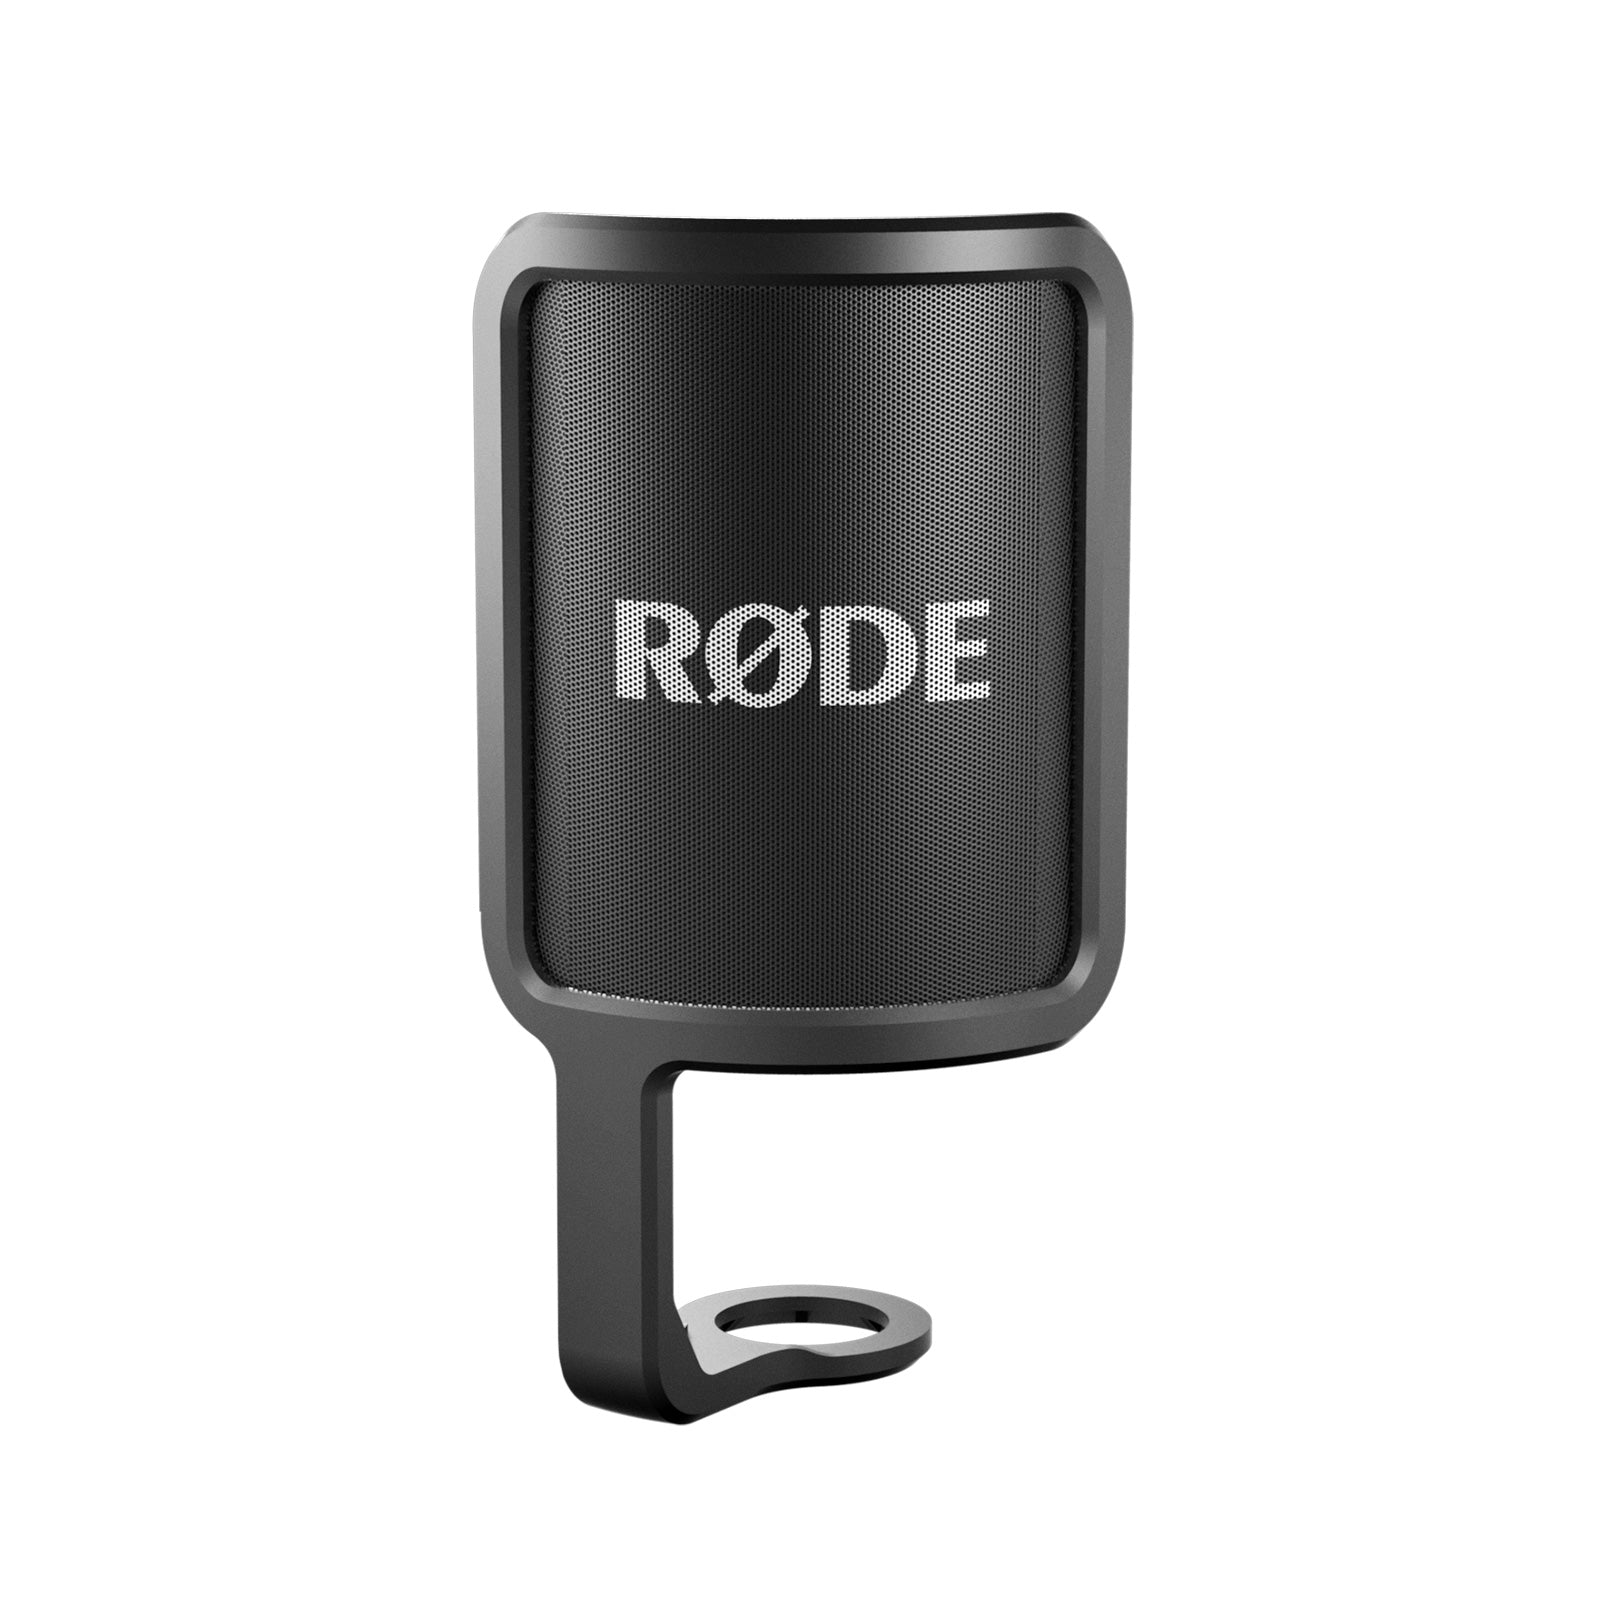 RODE(ロード) コンデンサーマイクロフォン NT-USB+ (NTUSB+)